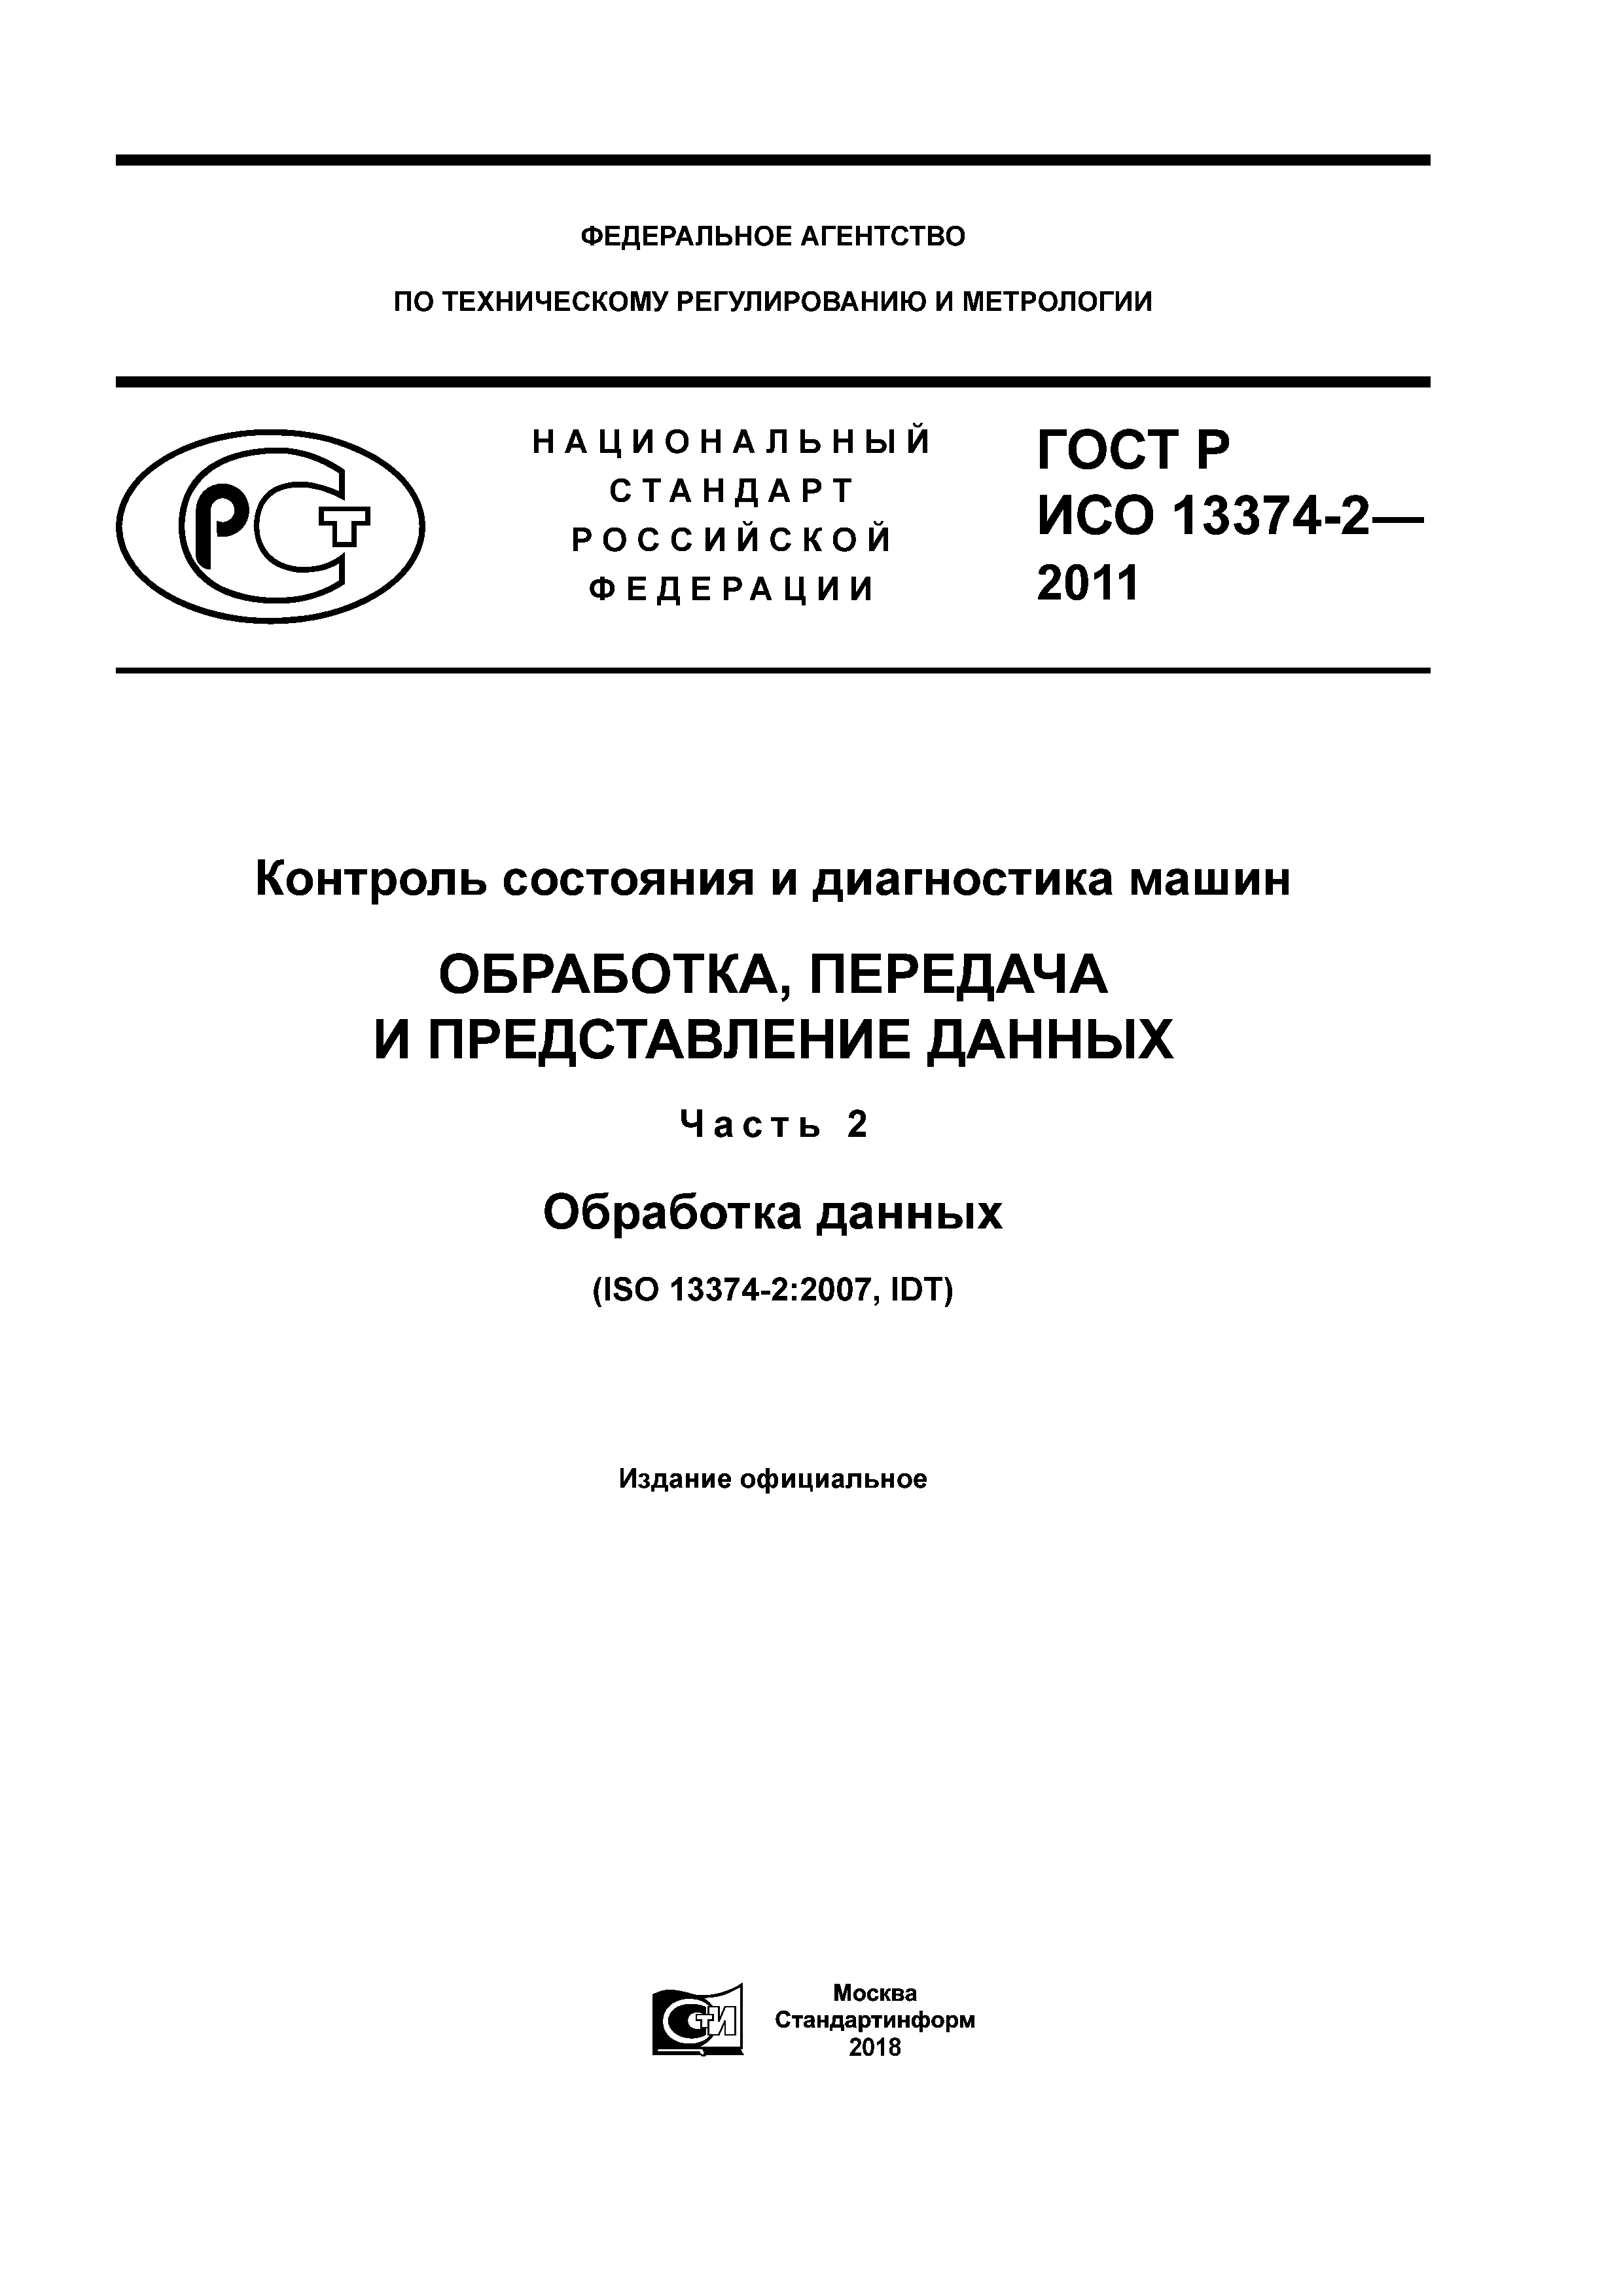 ГОСТ Р ИСО 13374-2-2011